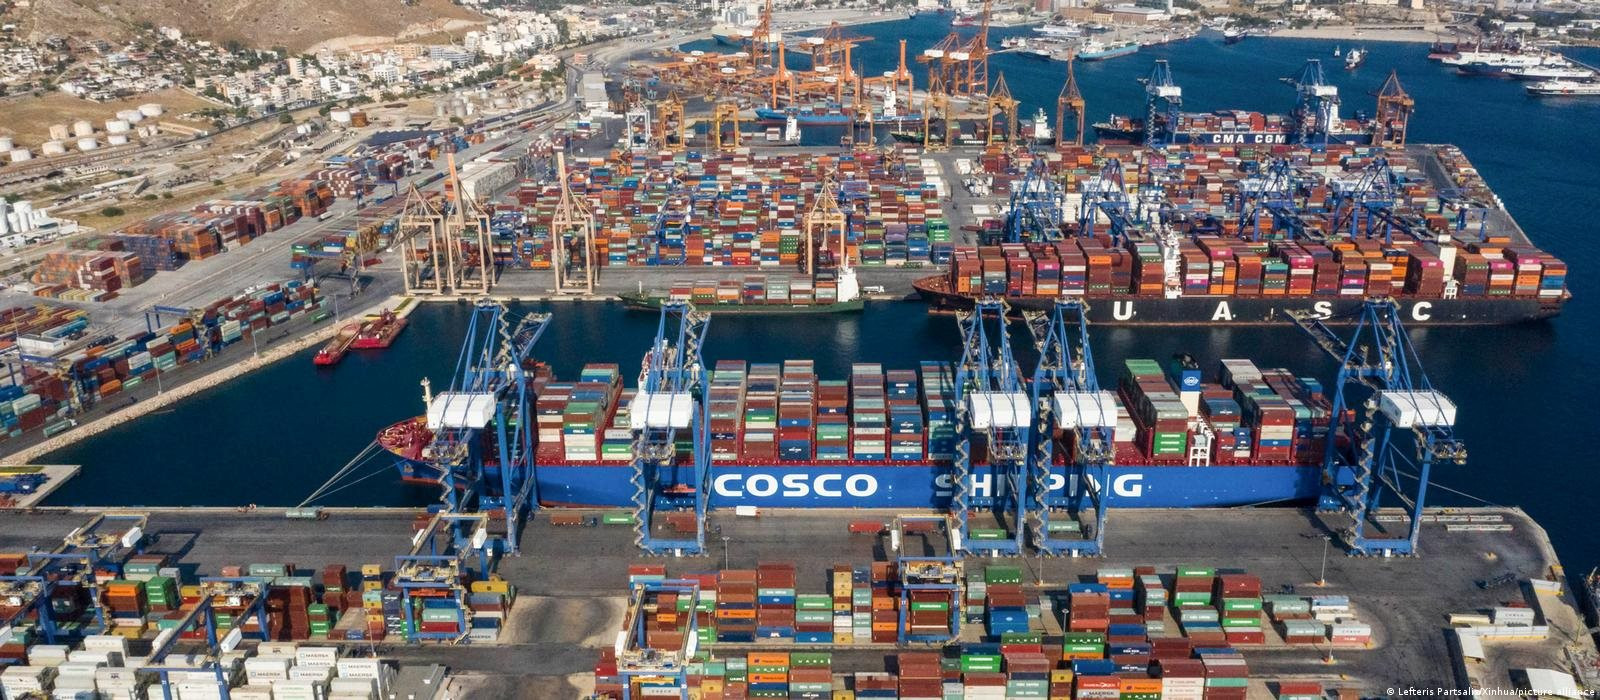 Tại cảng Piraeus lớn nhất của Hy Lạp, Trung Quốc là ông chủ